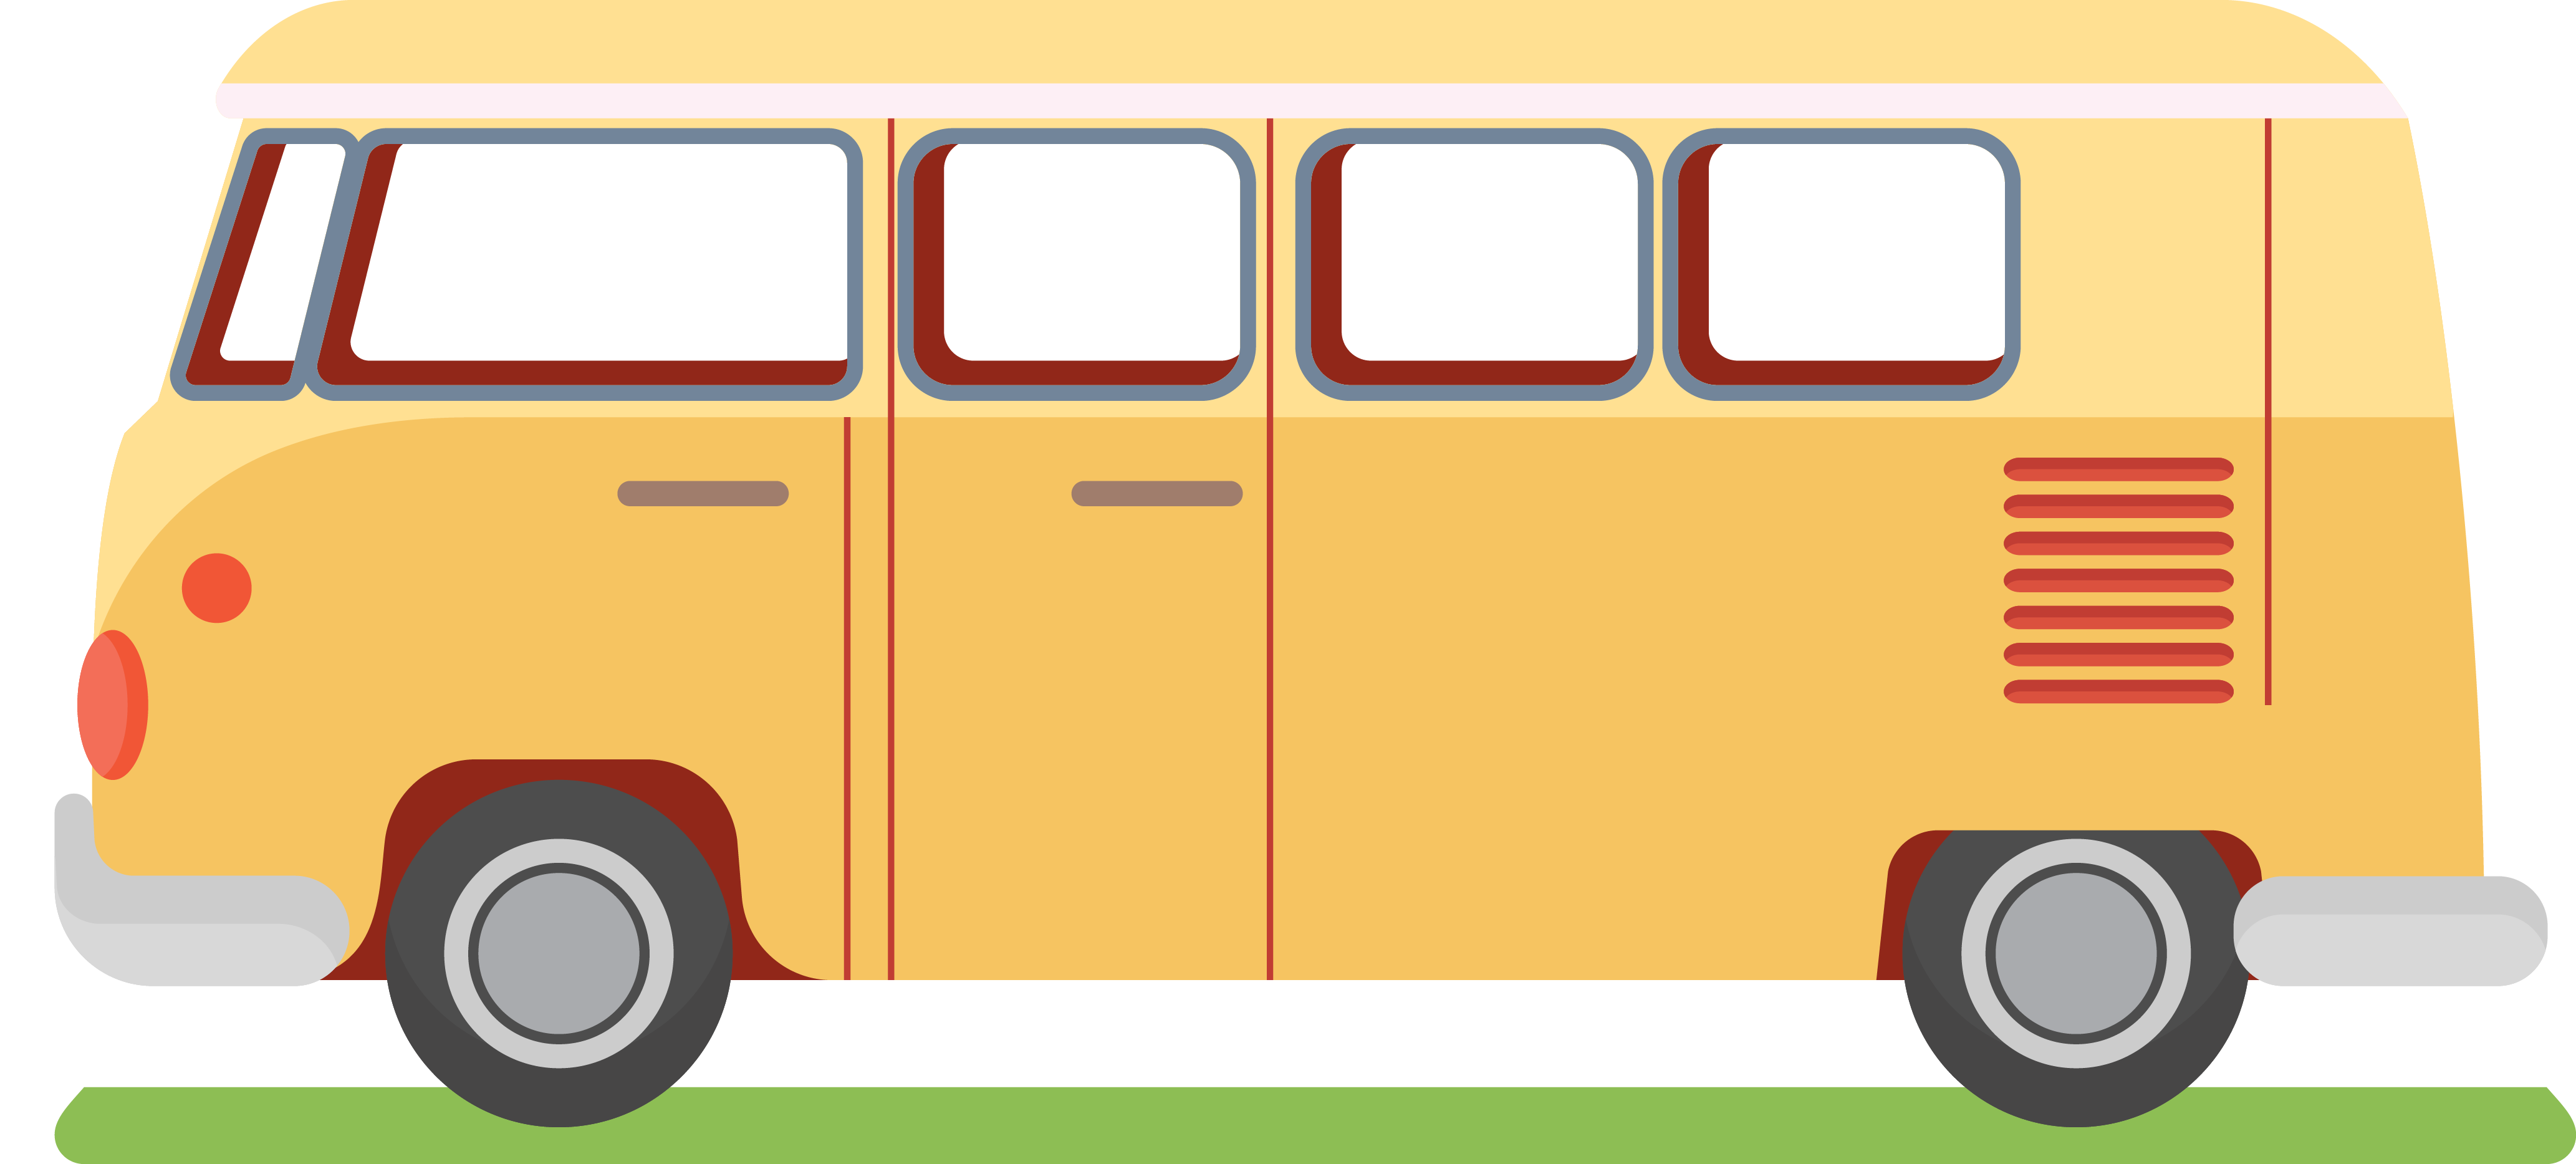 Tour Bus Service Illustration - Tour Bus Service Illustration (4132x1867)